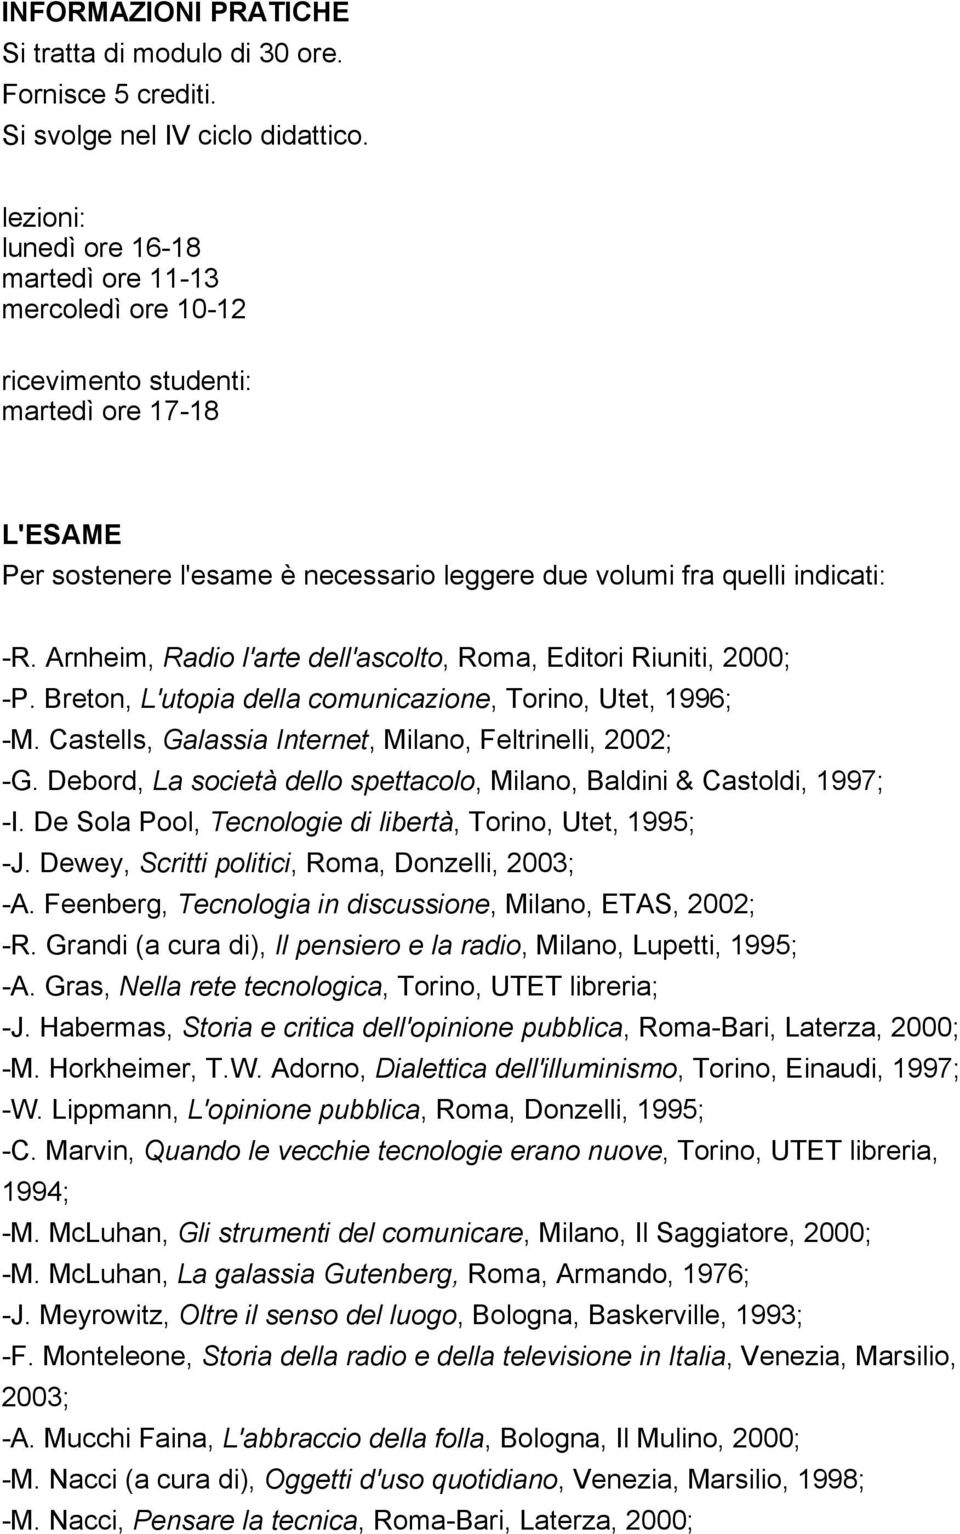 Arnheim, Radio l'arte dell'ascolto, Roma, Editori Riuniti, 2000; -P. Breton, L'utopia della comunicazione, Torino, Utet, 1996; -M. Castells, Galassia Internet, Milano, Feltrinelli, 2002; -G.